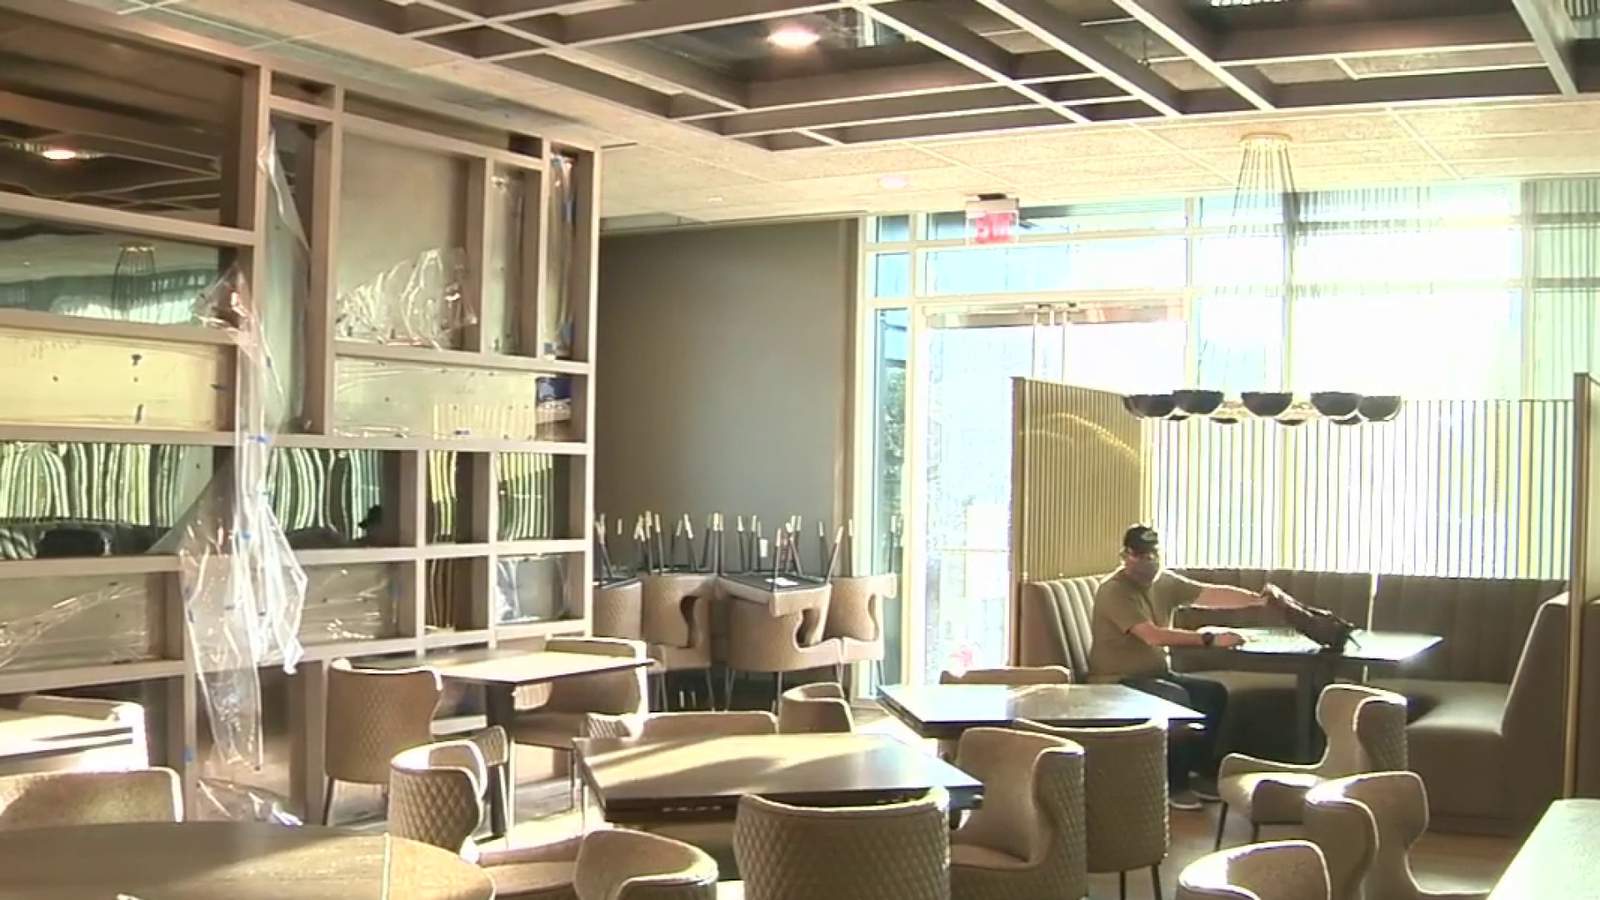 Landrace restaurant inside downtown San Antonio luxury hotel set to open in February